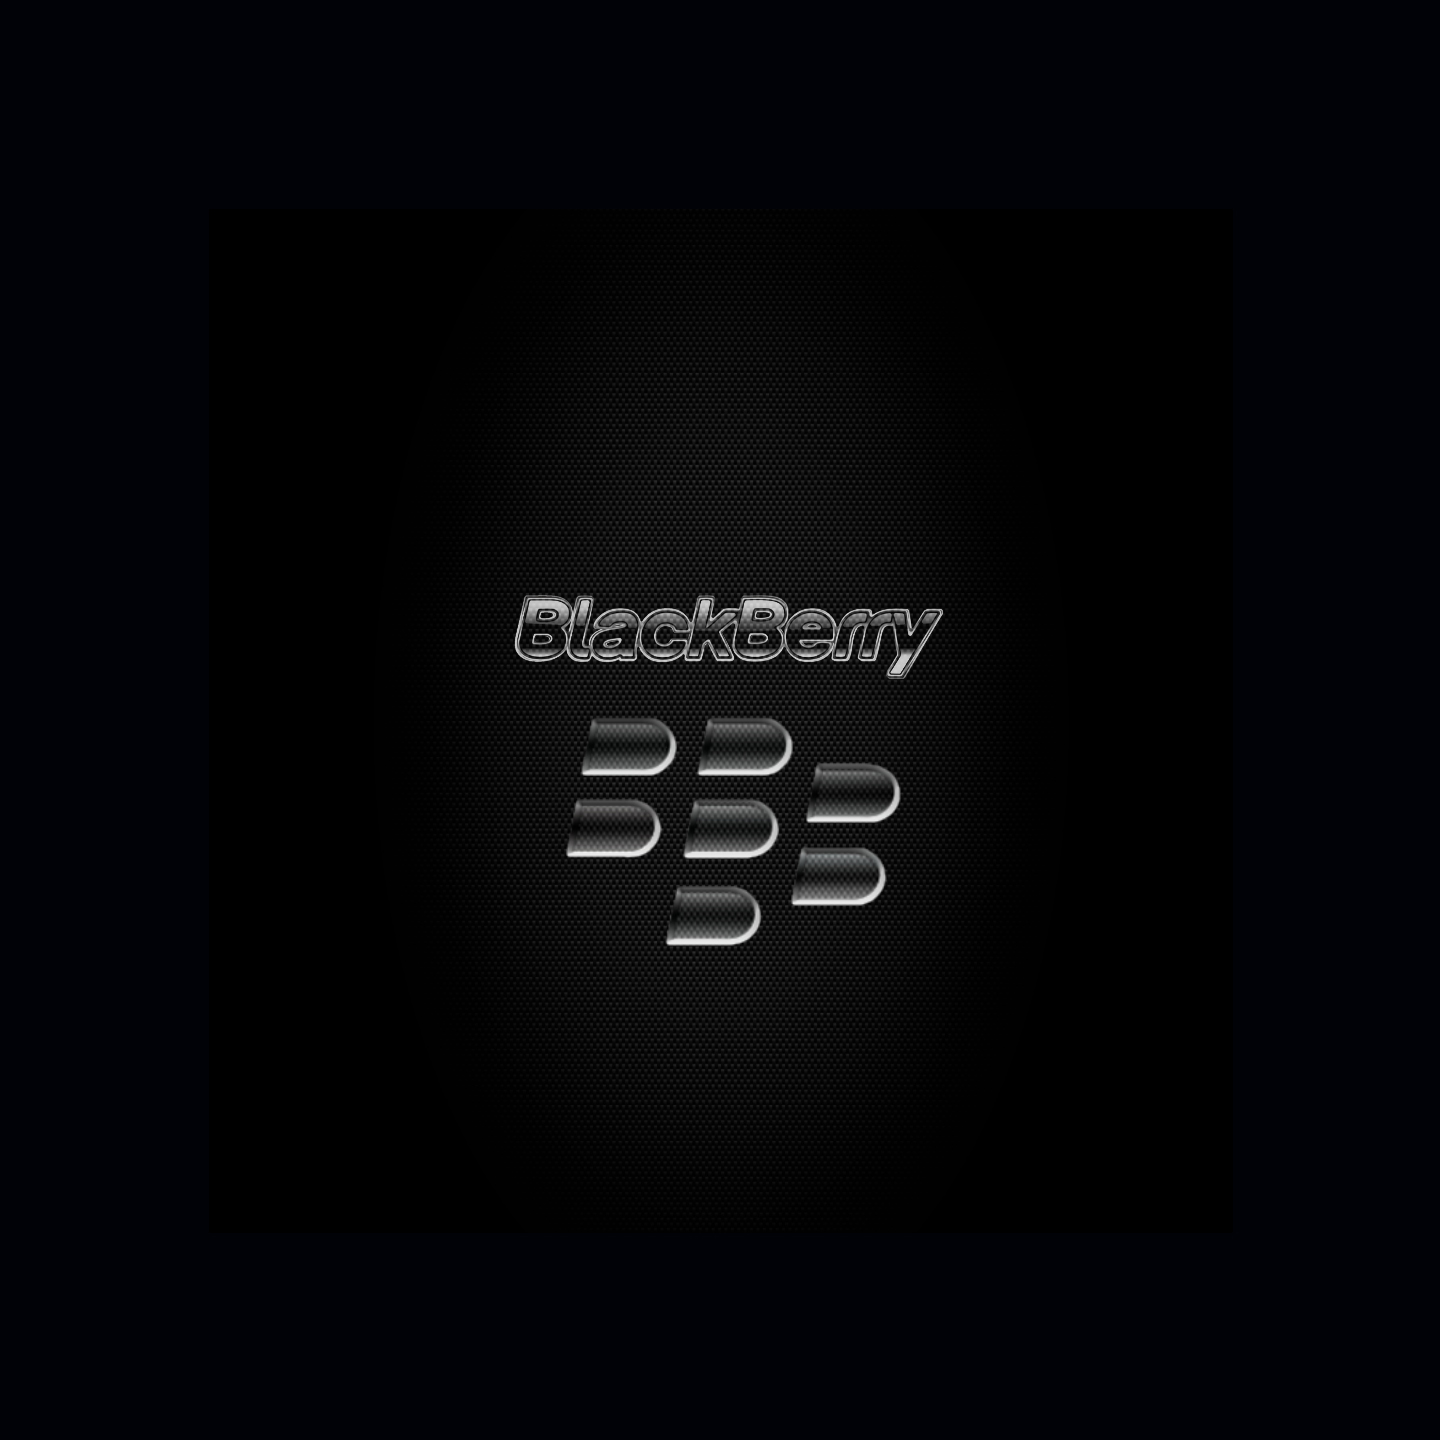 PHOTO  Mời tải về hình nền BlackBerry Secure miễn phí từ Pootermobile   Cộng đồng BlackBerry Việt Nam